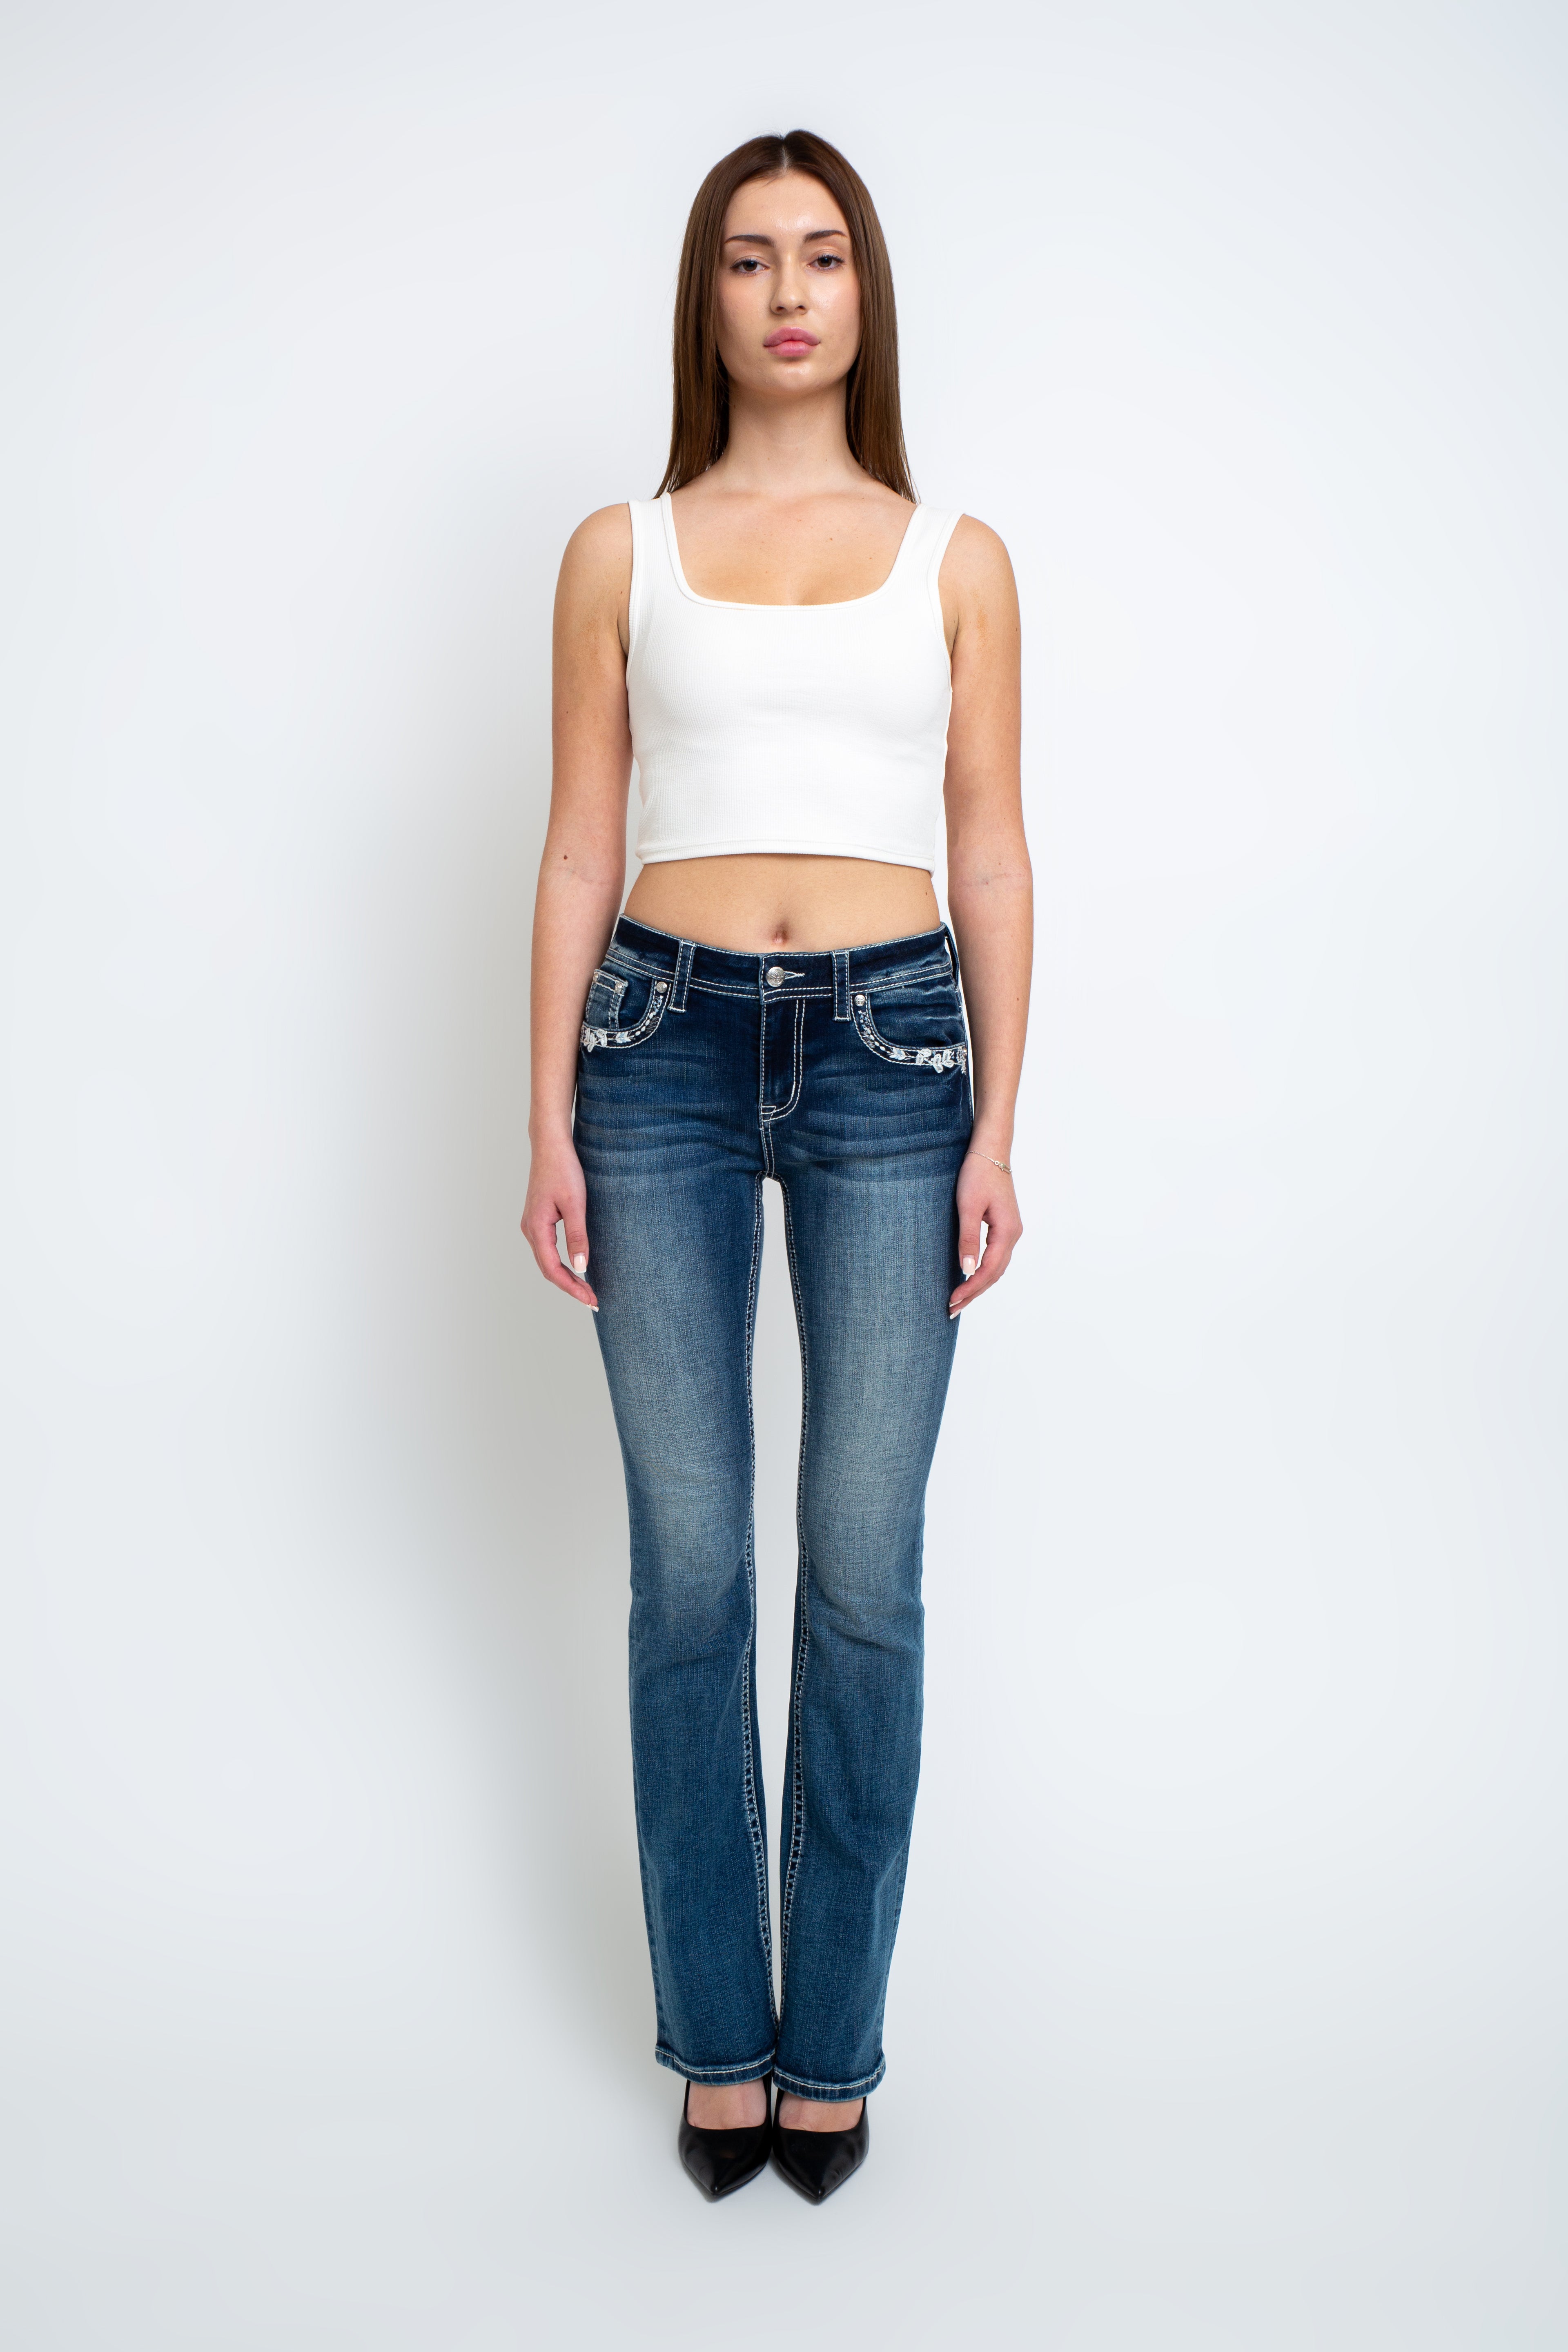 embellished jeans - embellish jeans - grace in la denim